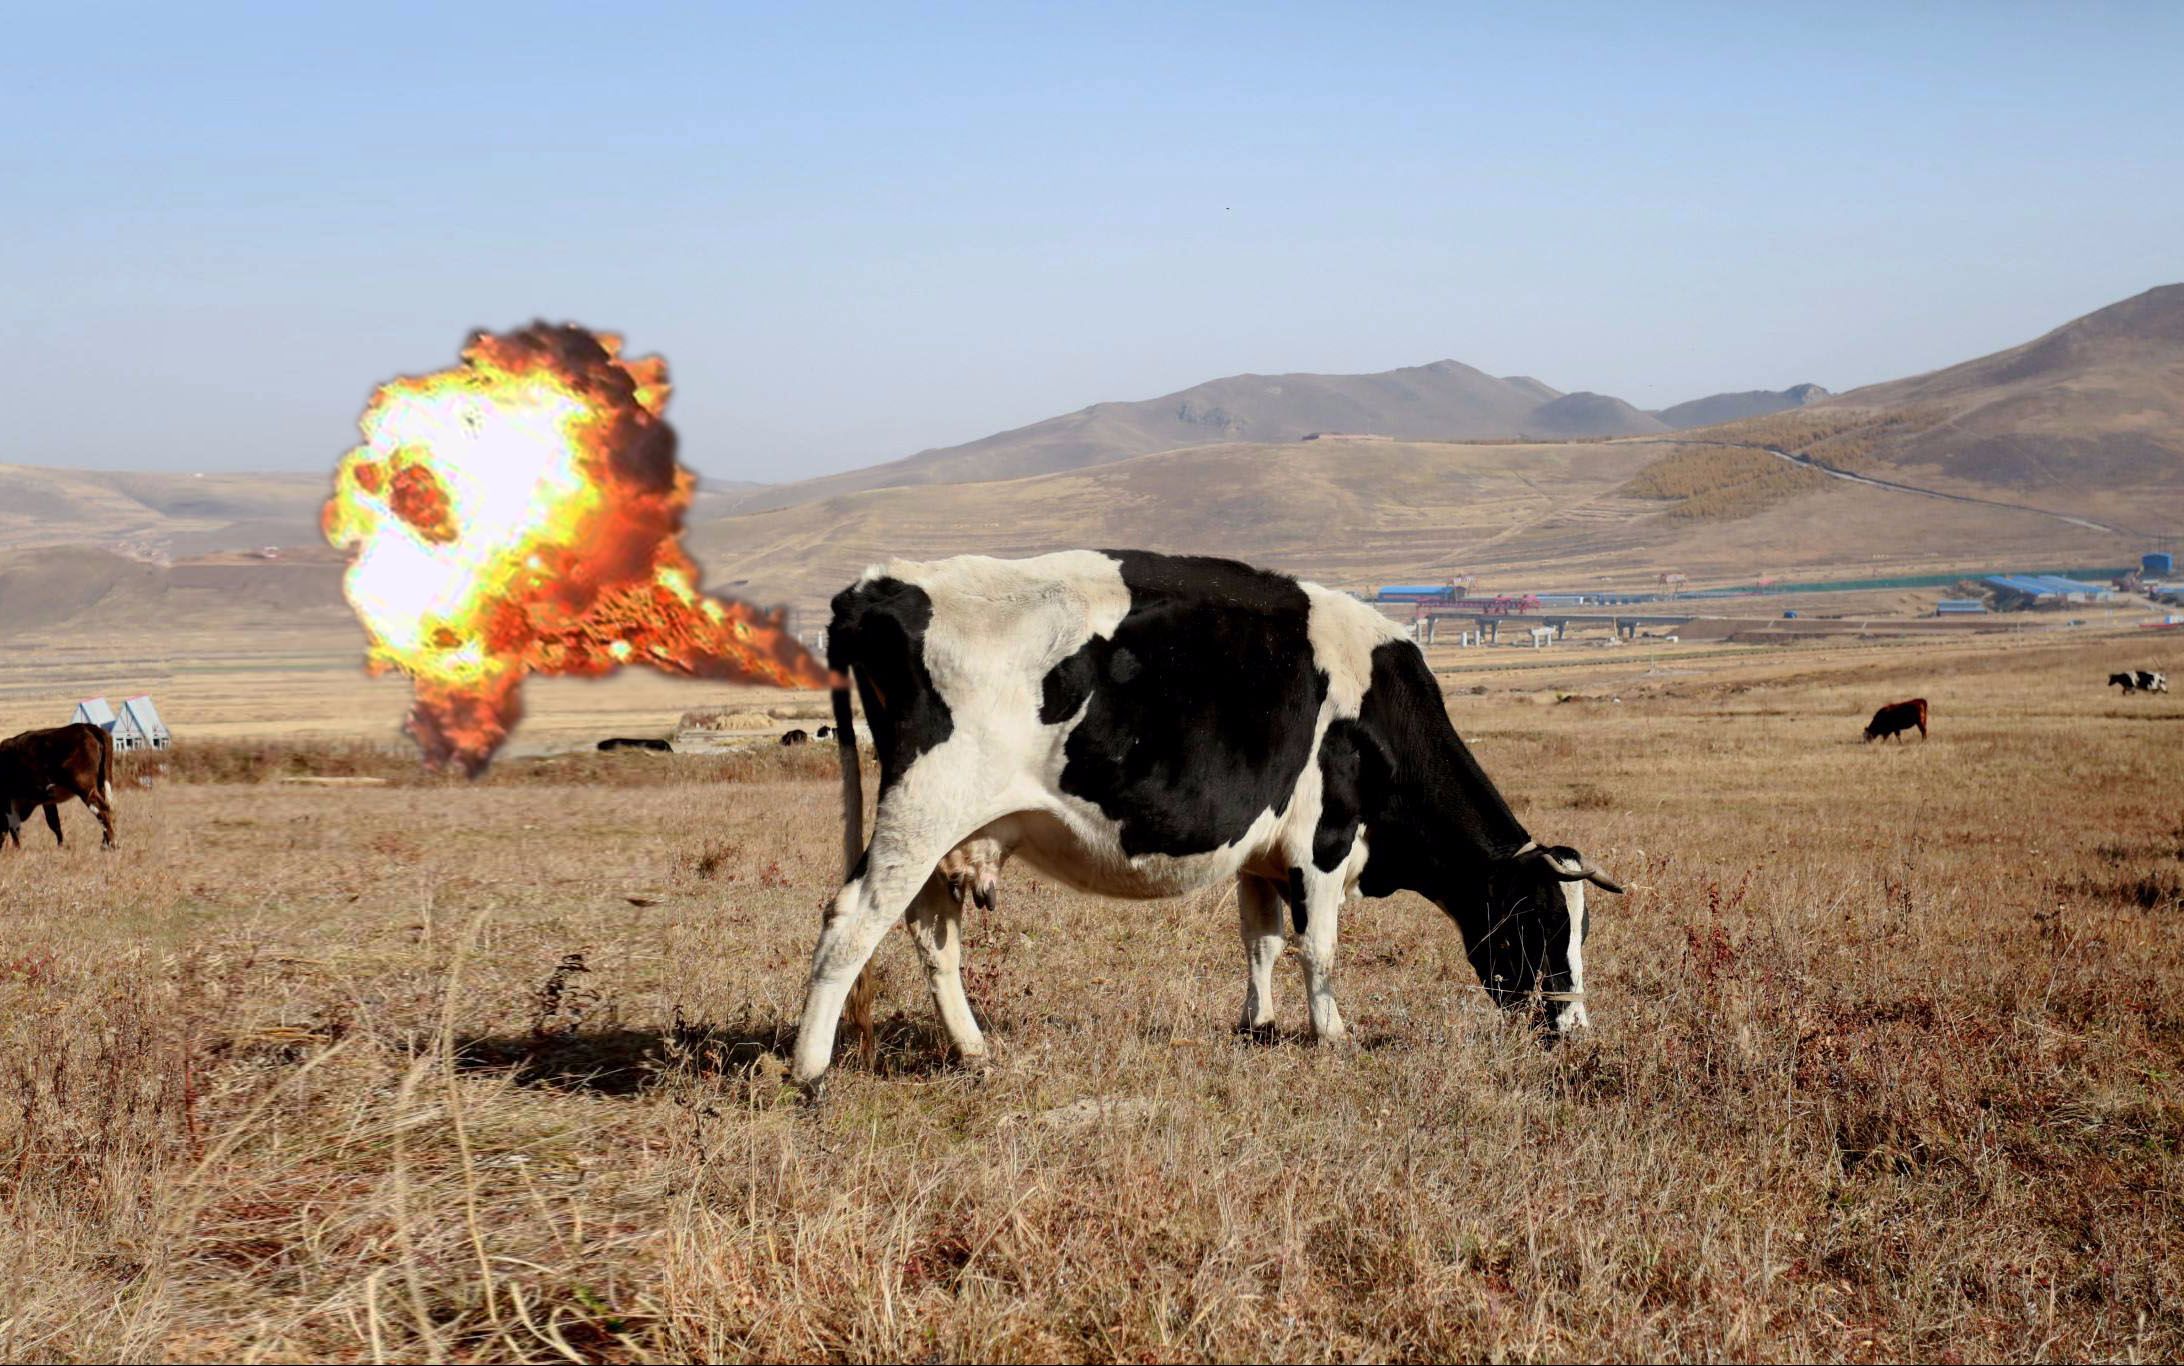 牛放屁引起爆炸难道吃了火药了被拍下的场面真是火爆